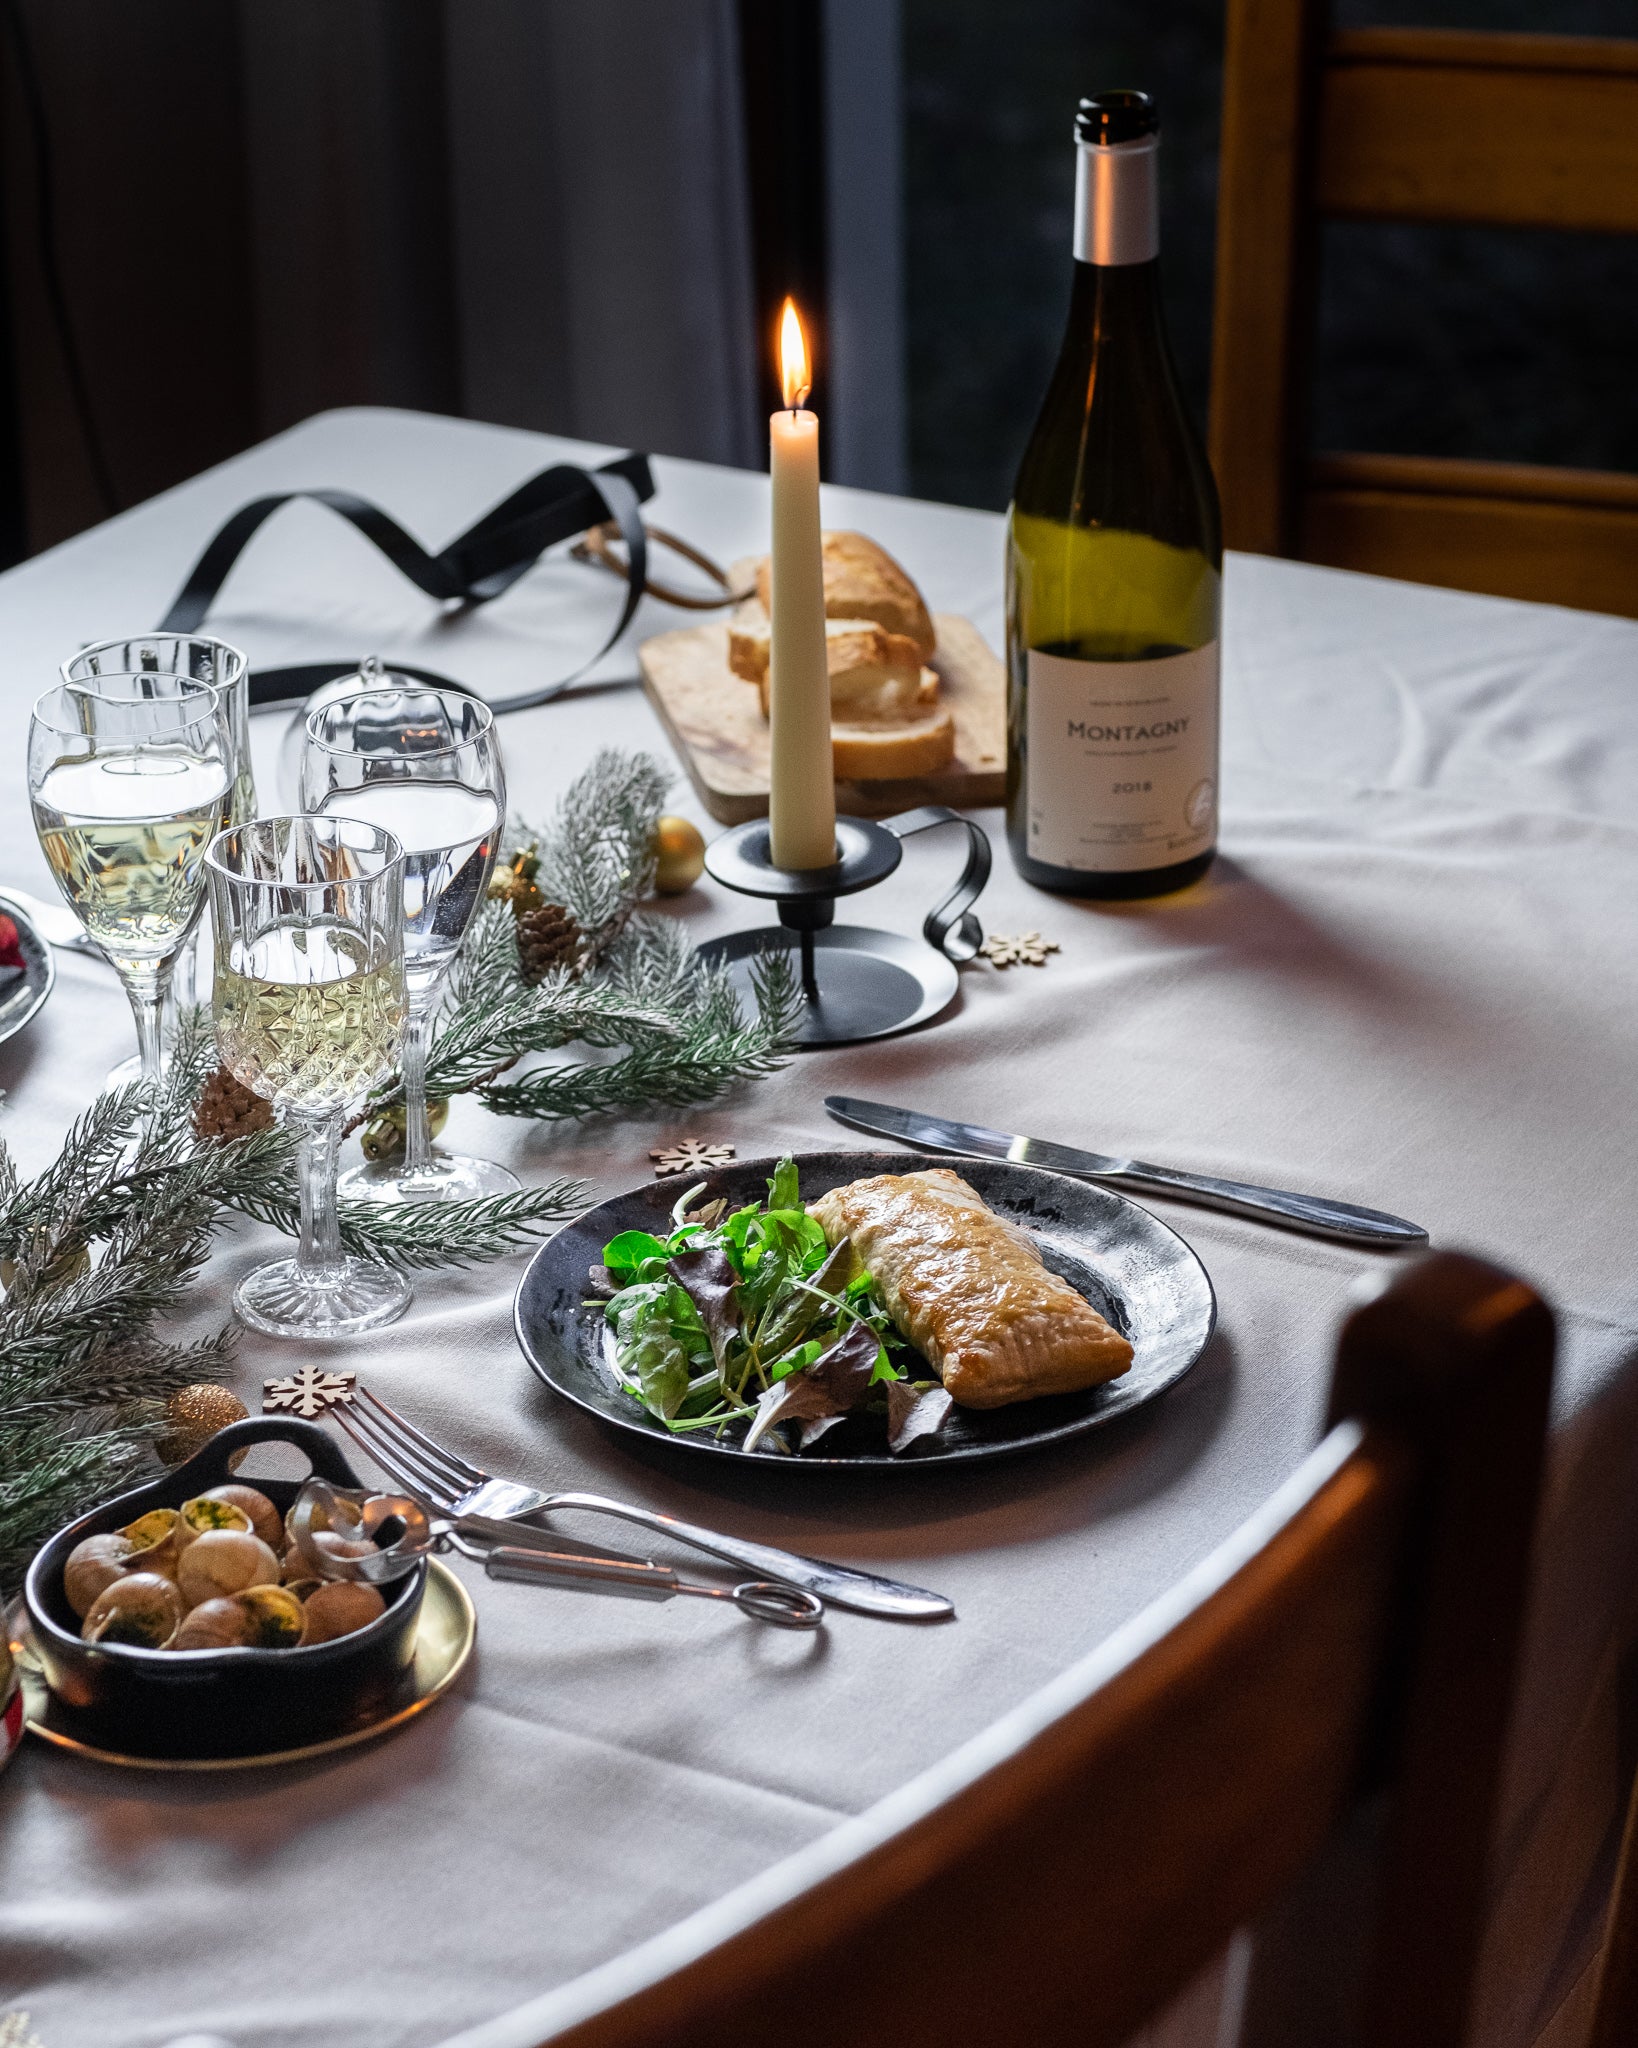 Recette de fête - Feuilleté aux escargots, échalotes caramélisées et sauce au vin rouge